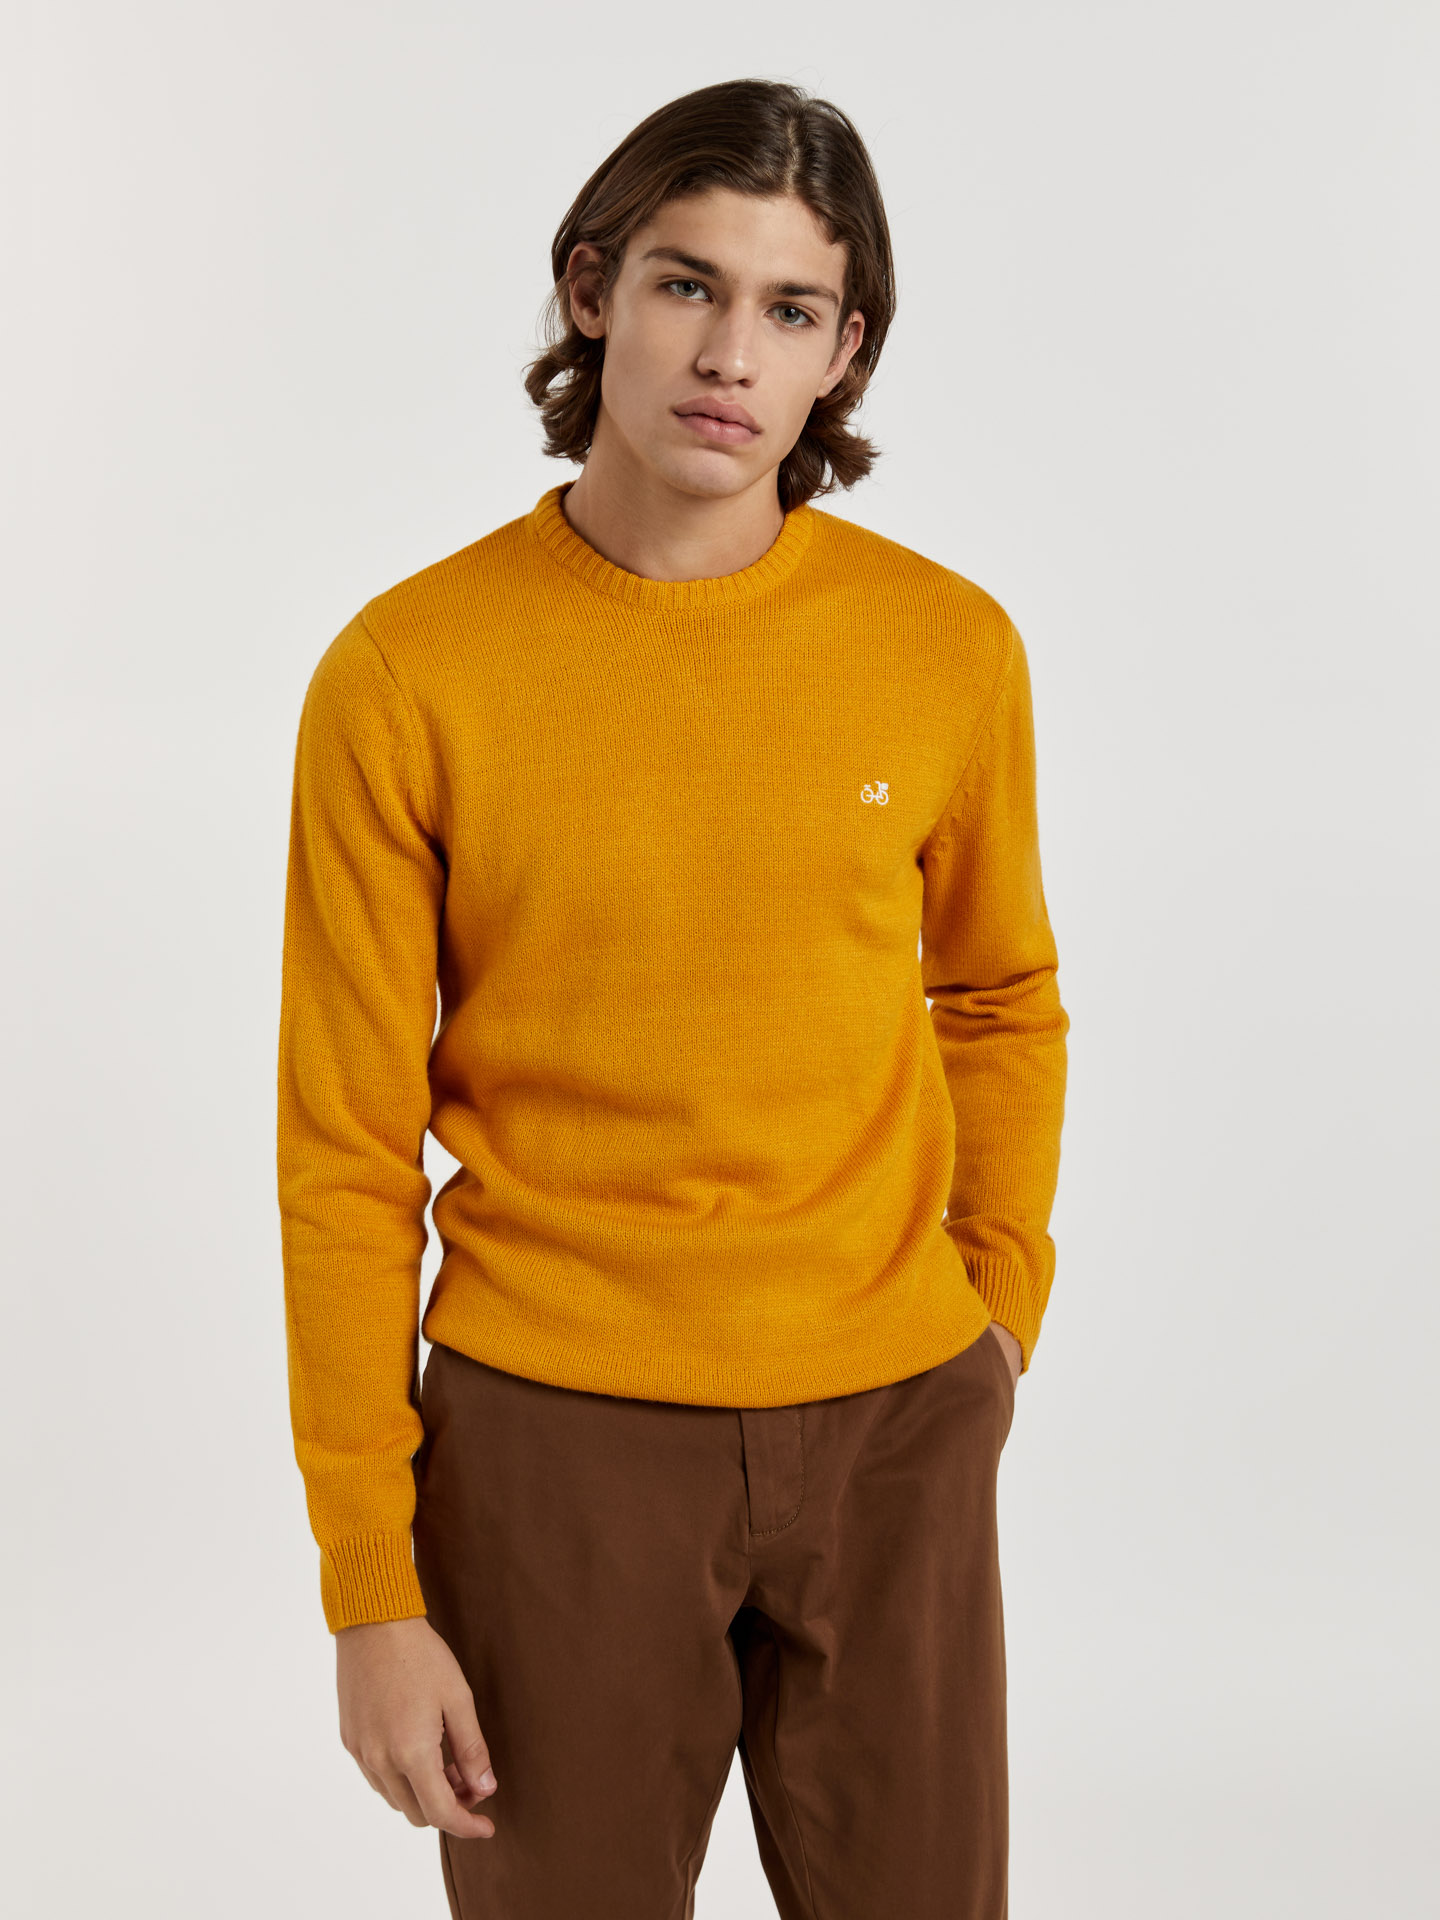 Sweater Yellow Casual Man